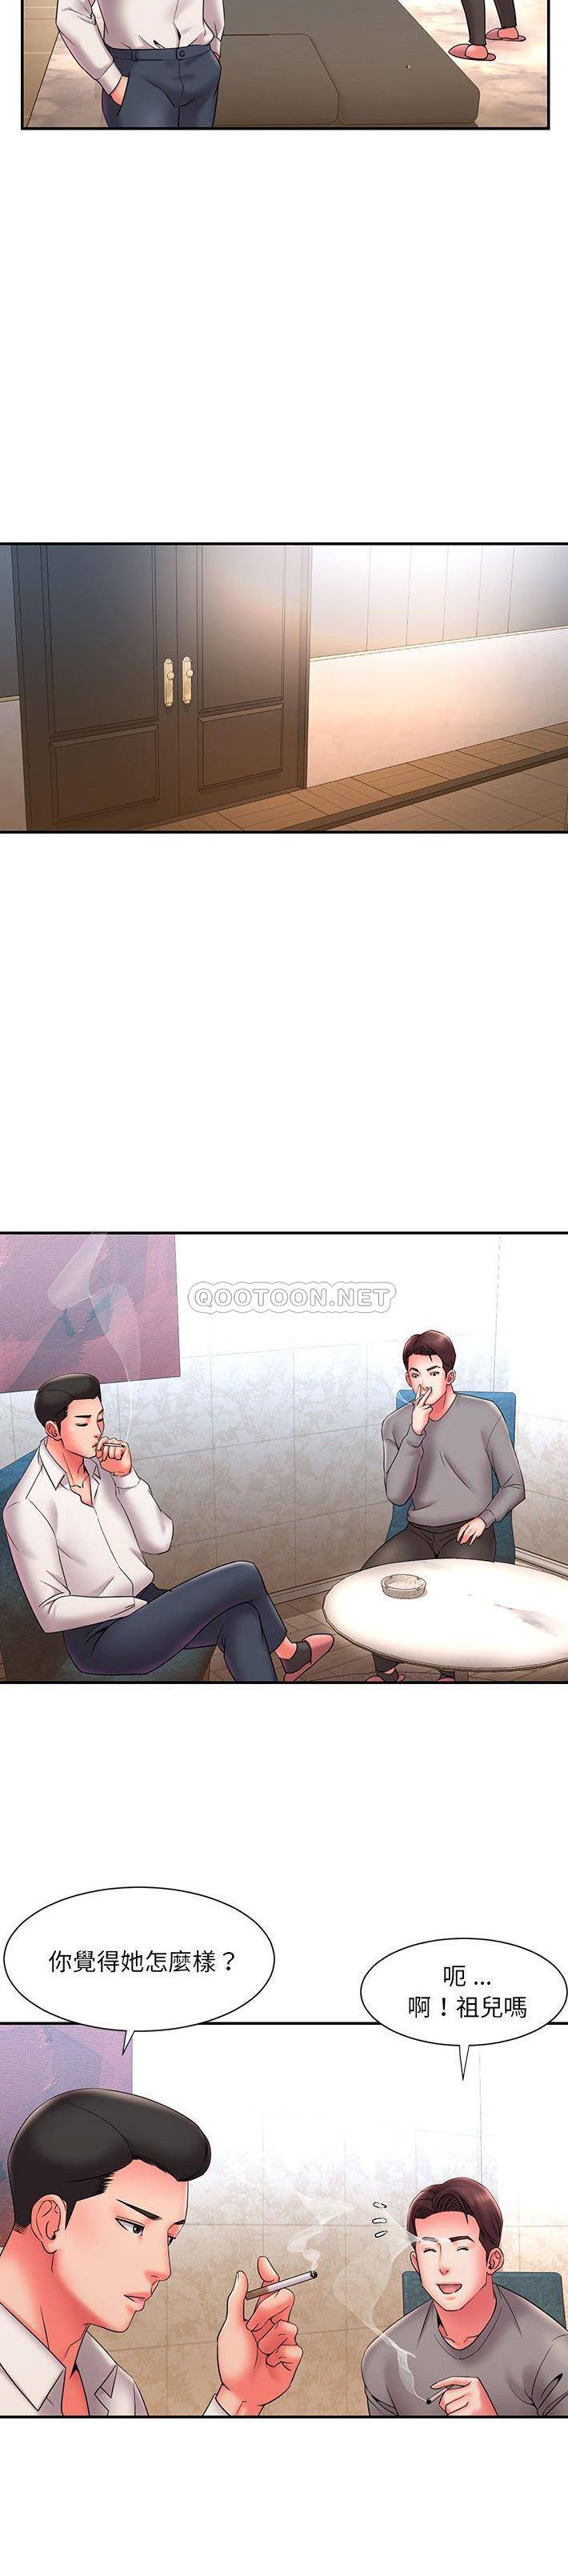 韩国污漫画 被拋棄的男人(男孩沒人愛) 第22话 2